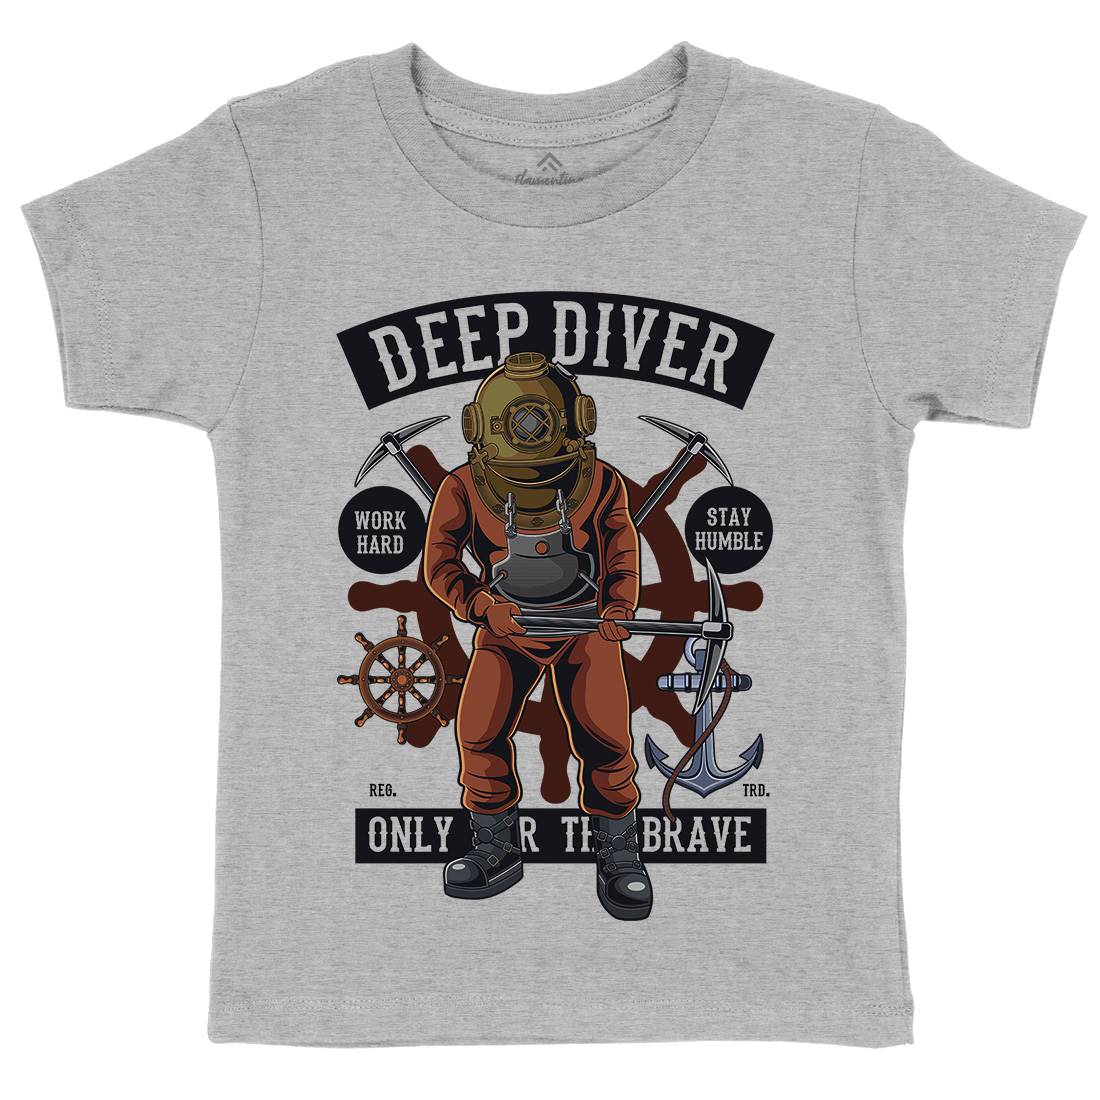 Diver Kids Crew Neck T-Shirt Navy C337